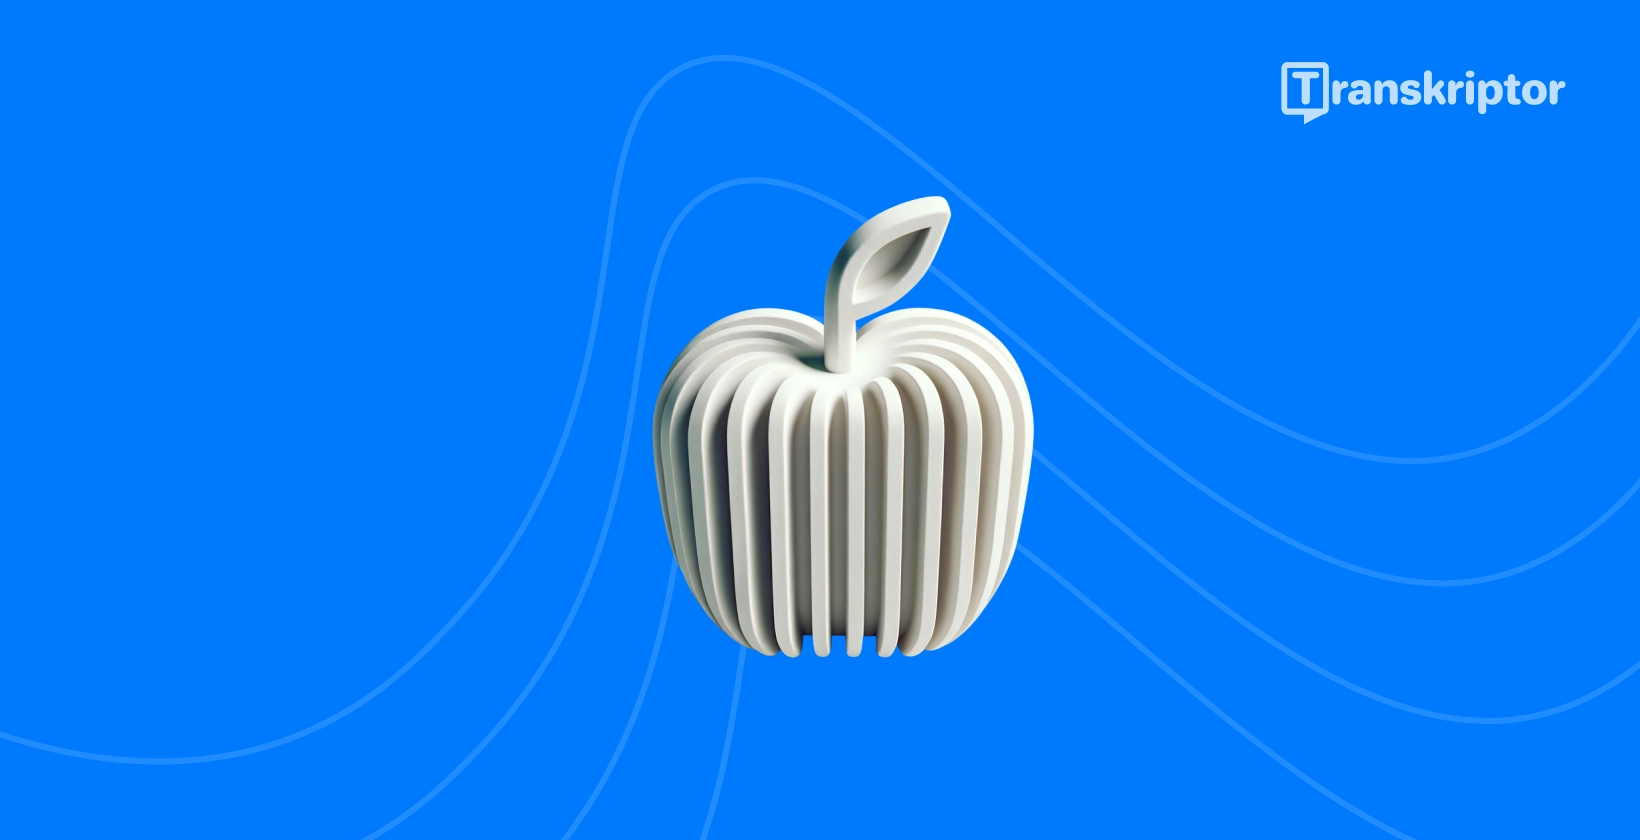 Stilizirana jabuka sa zvučnim valovima predstavlja najbolje aplikacije za transkripciju dostupne iPhone korisnicima.